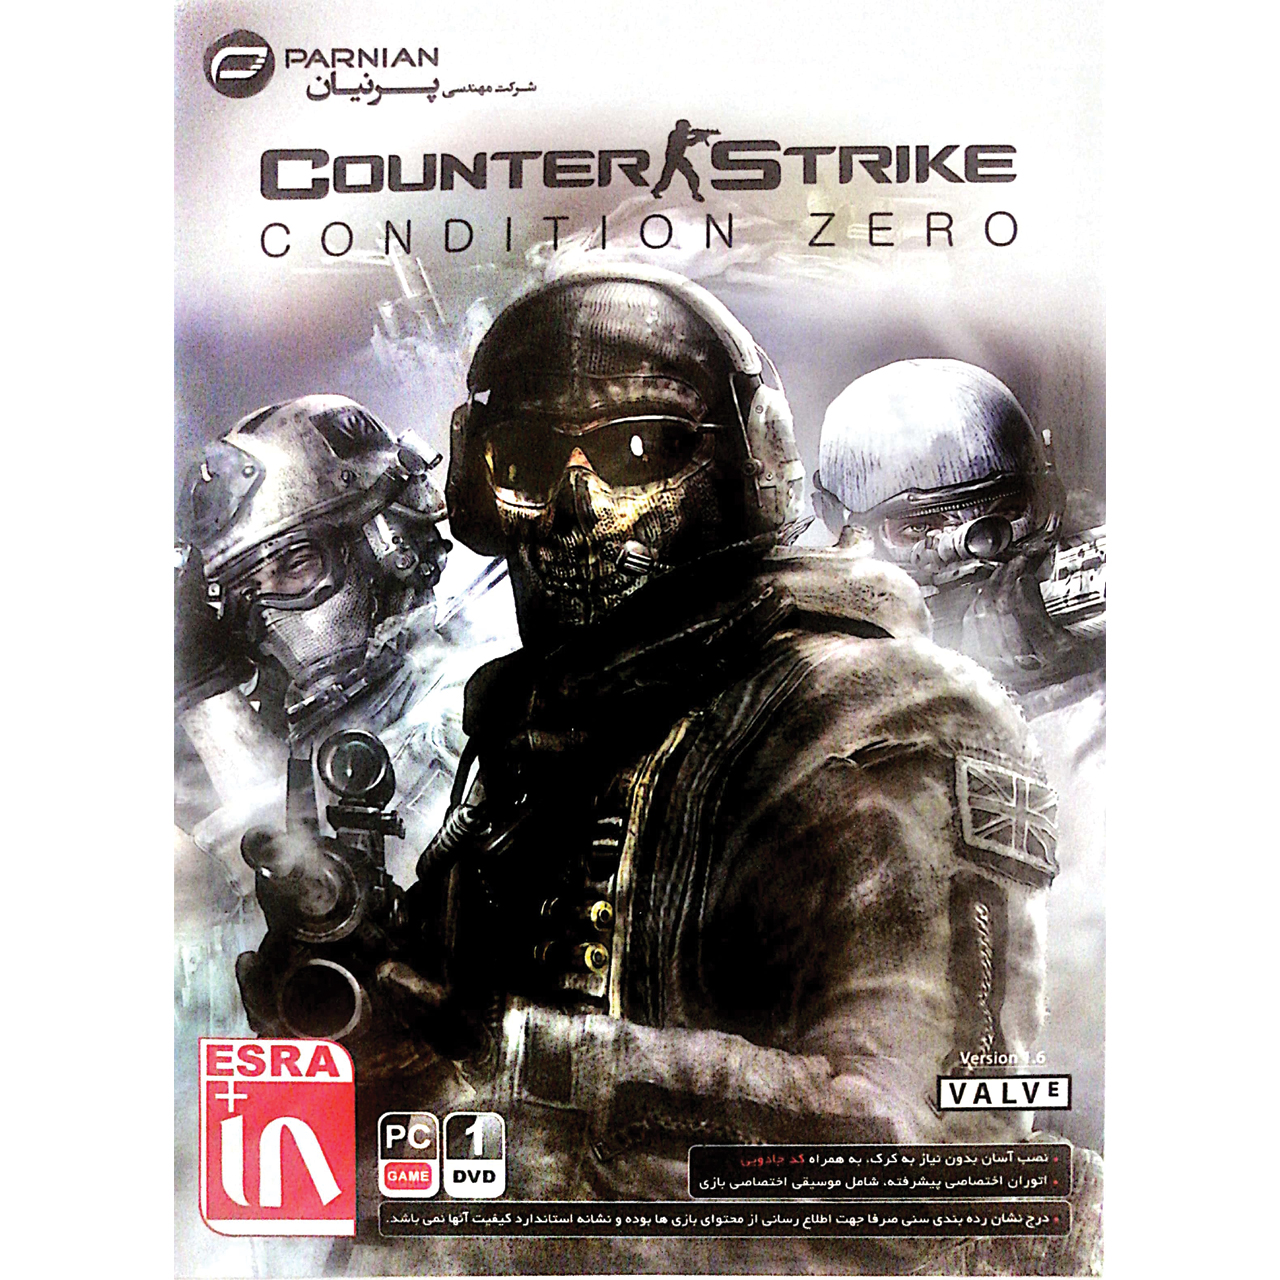 بازی  counter Srike condition zero version 1.6 مخصوص PC